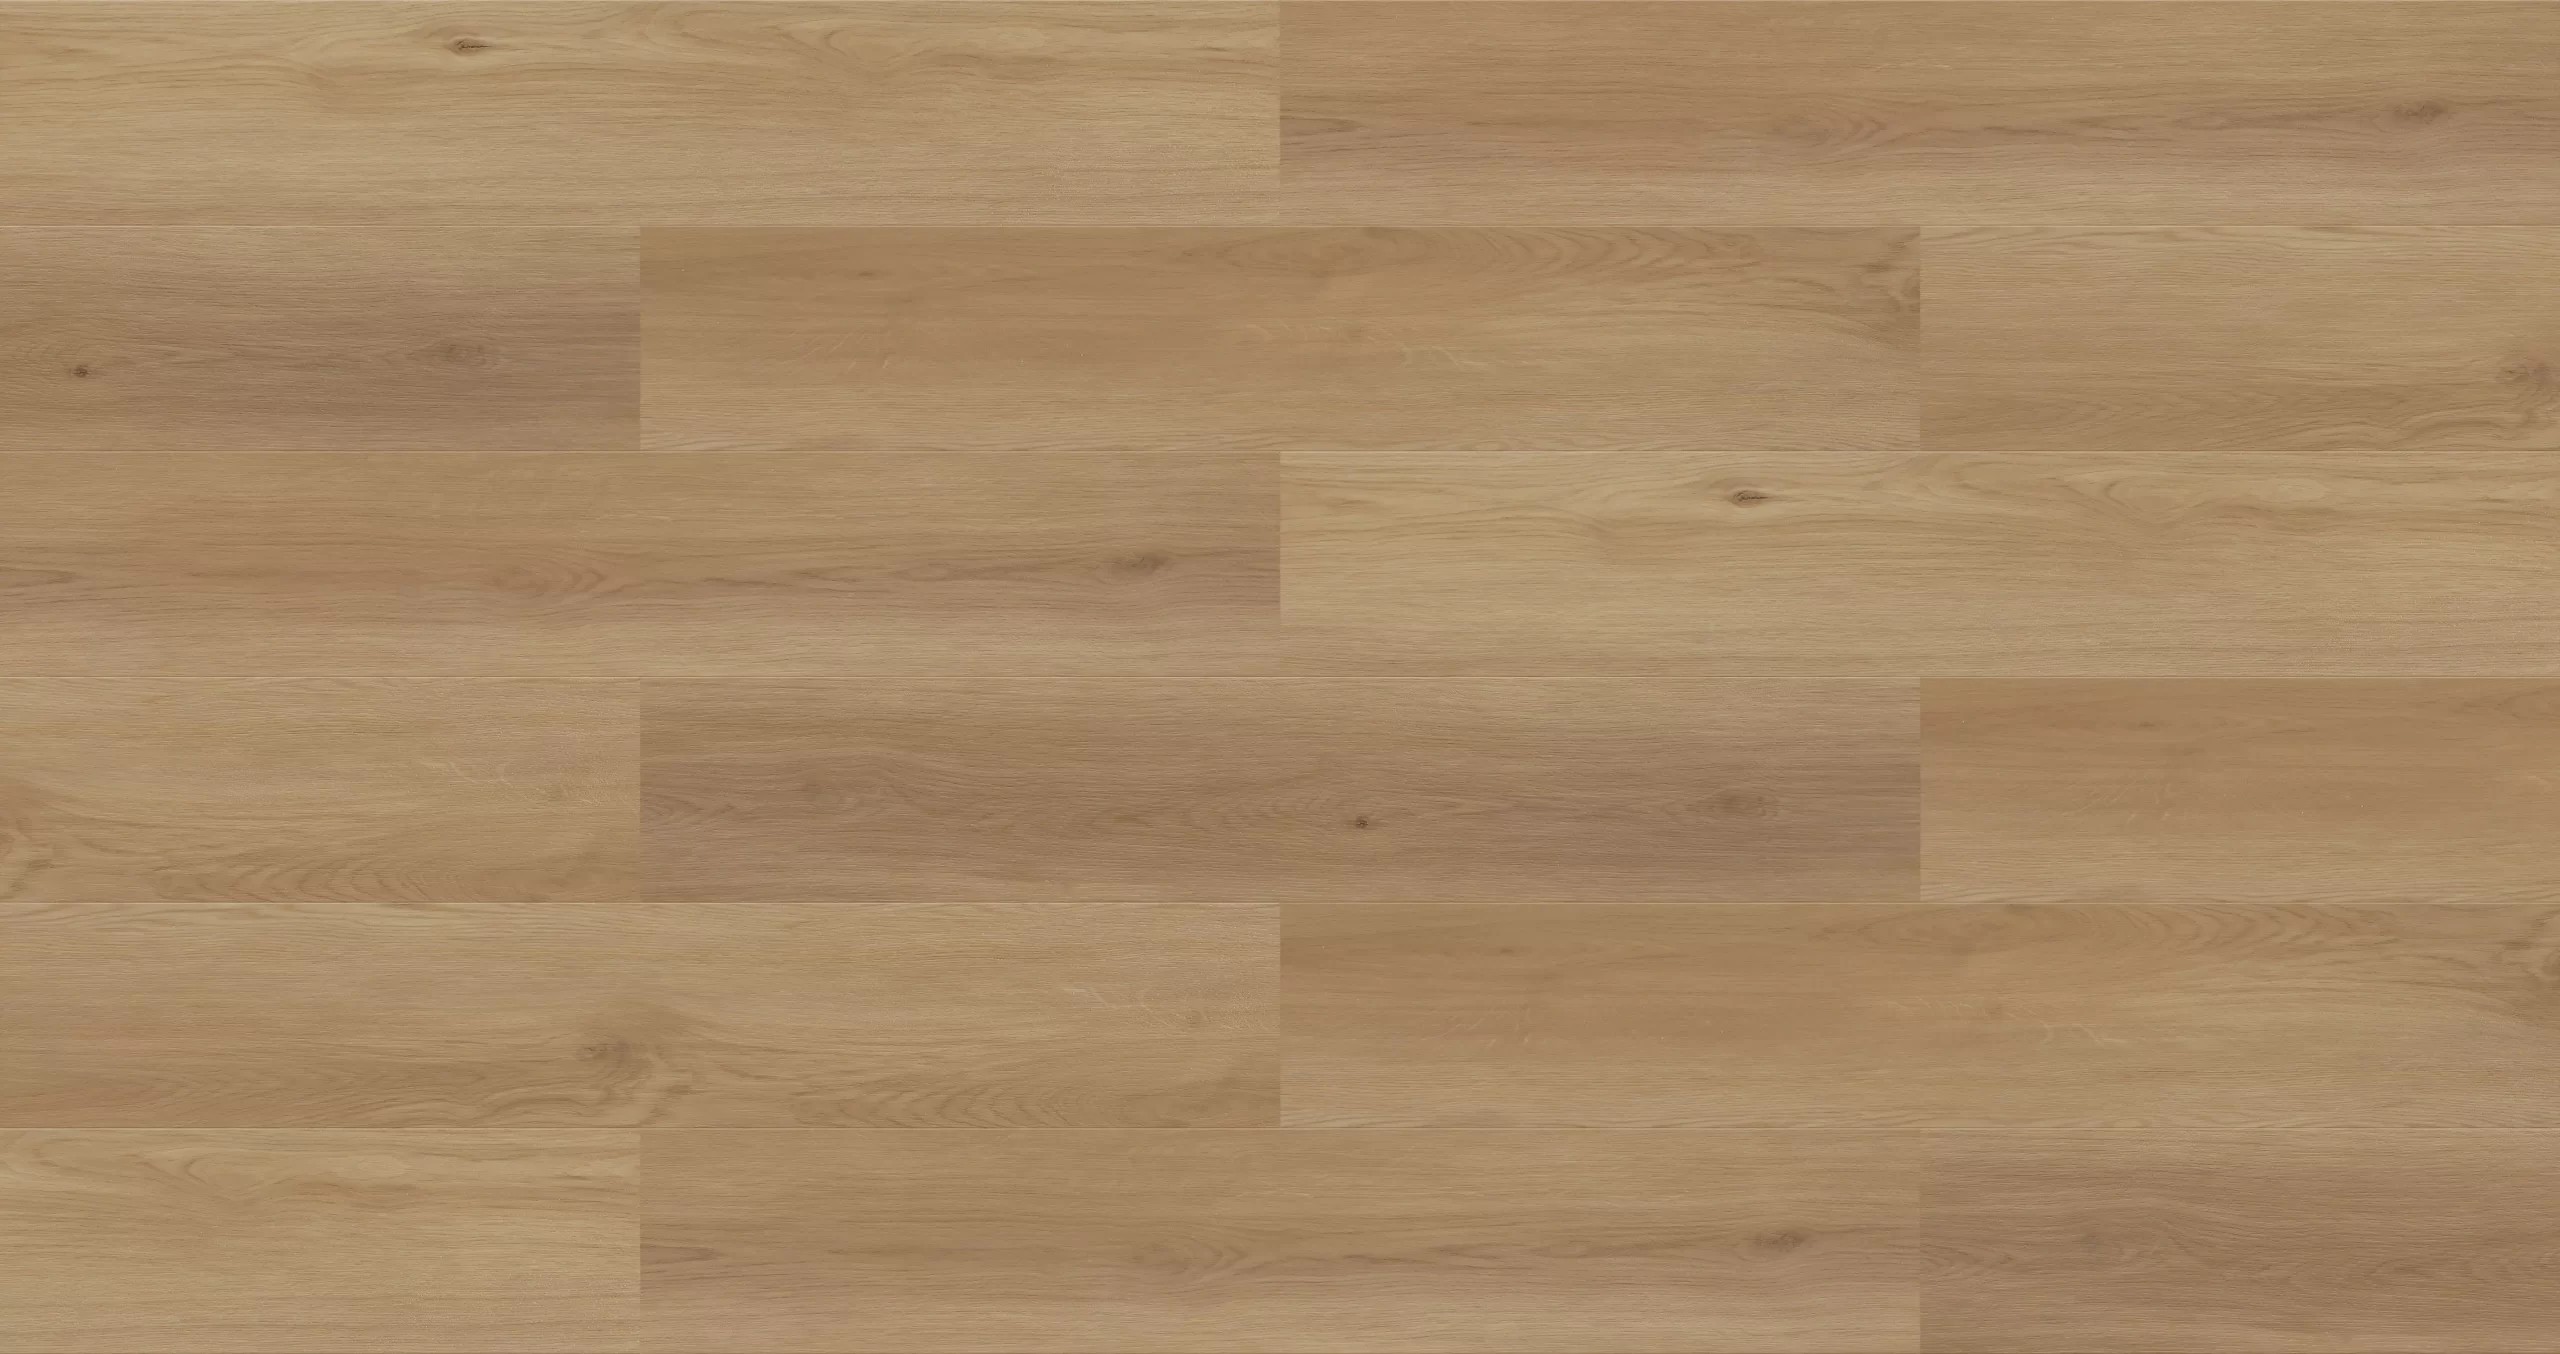 HONEY SPC Vinyl Flooring, Vinyl flooring, floor, flooring, wood vinyl flooring, wood flooring, vinyl, marble vinyl, vinyl look like porcelain, wood floor, wood flooring, vinyl floor 